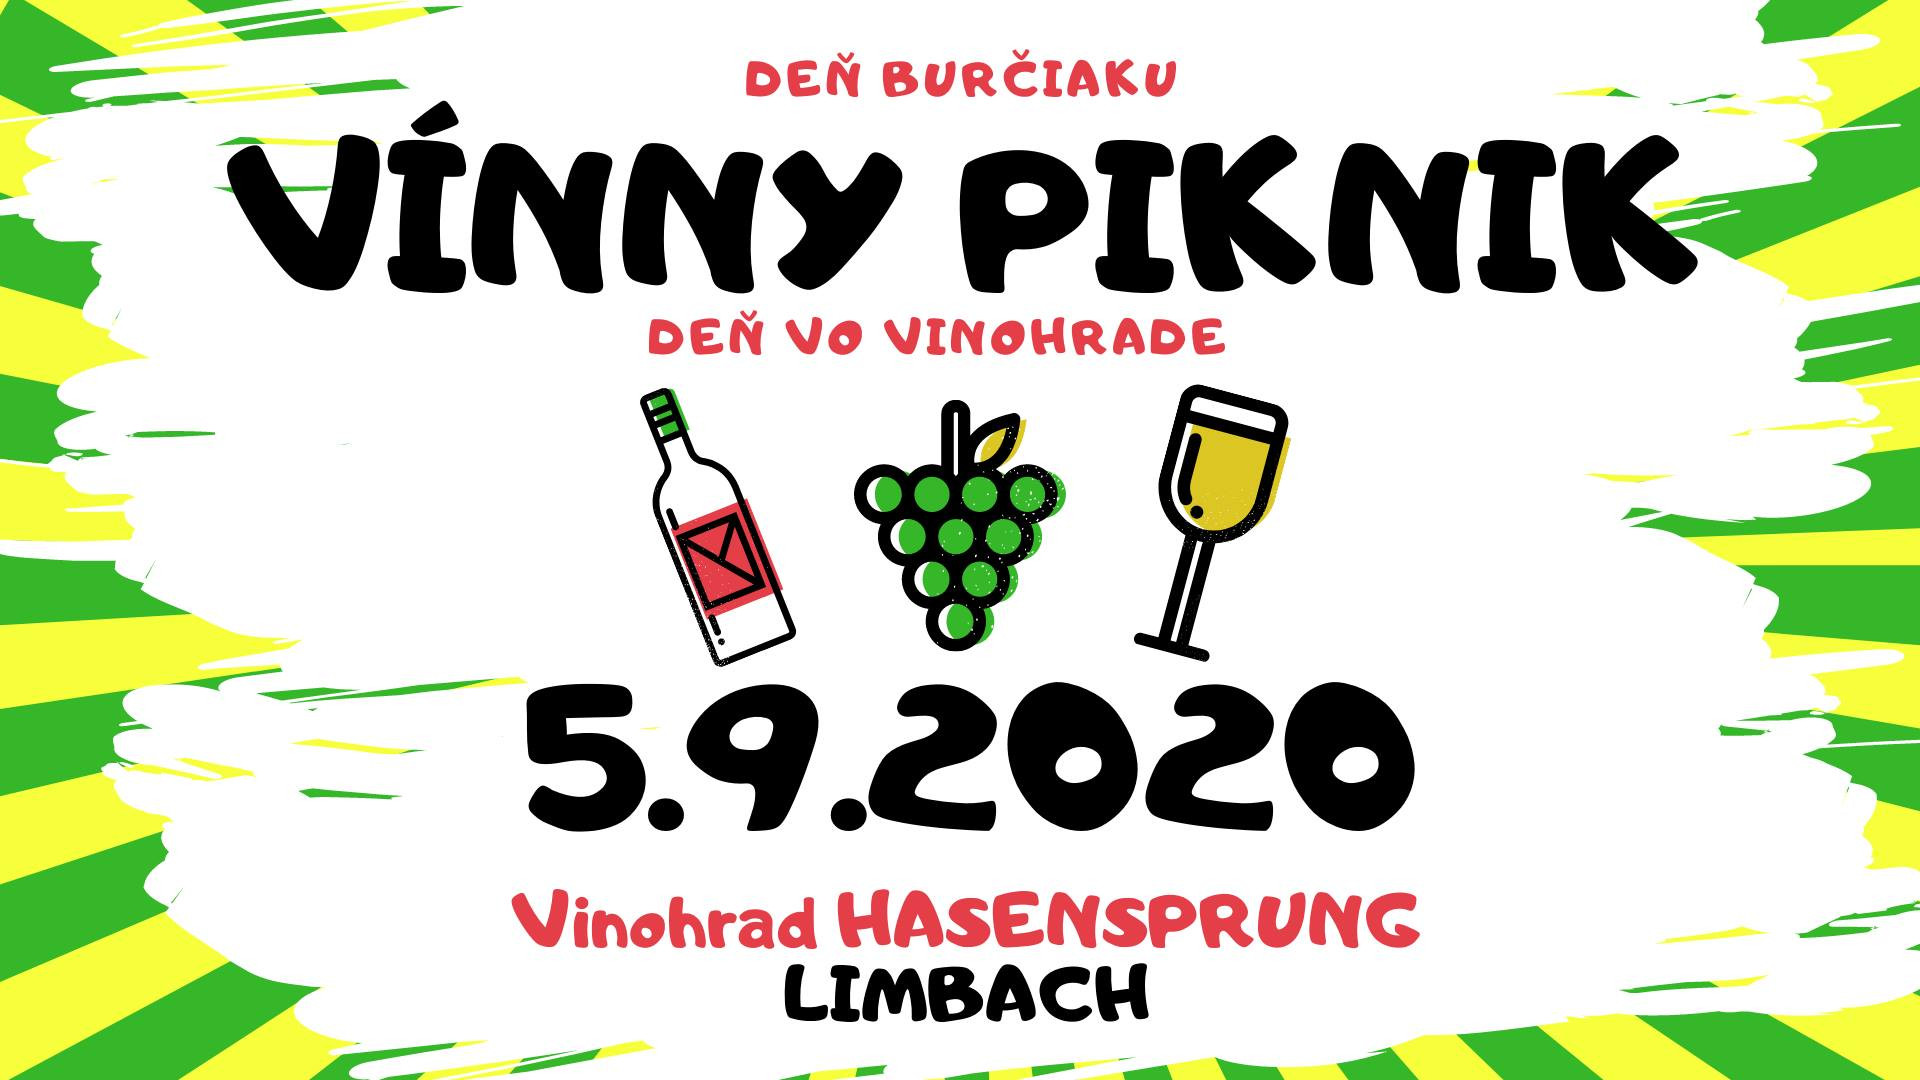 Vínny piknik v Limbachu